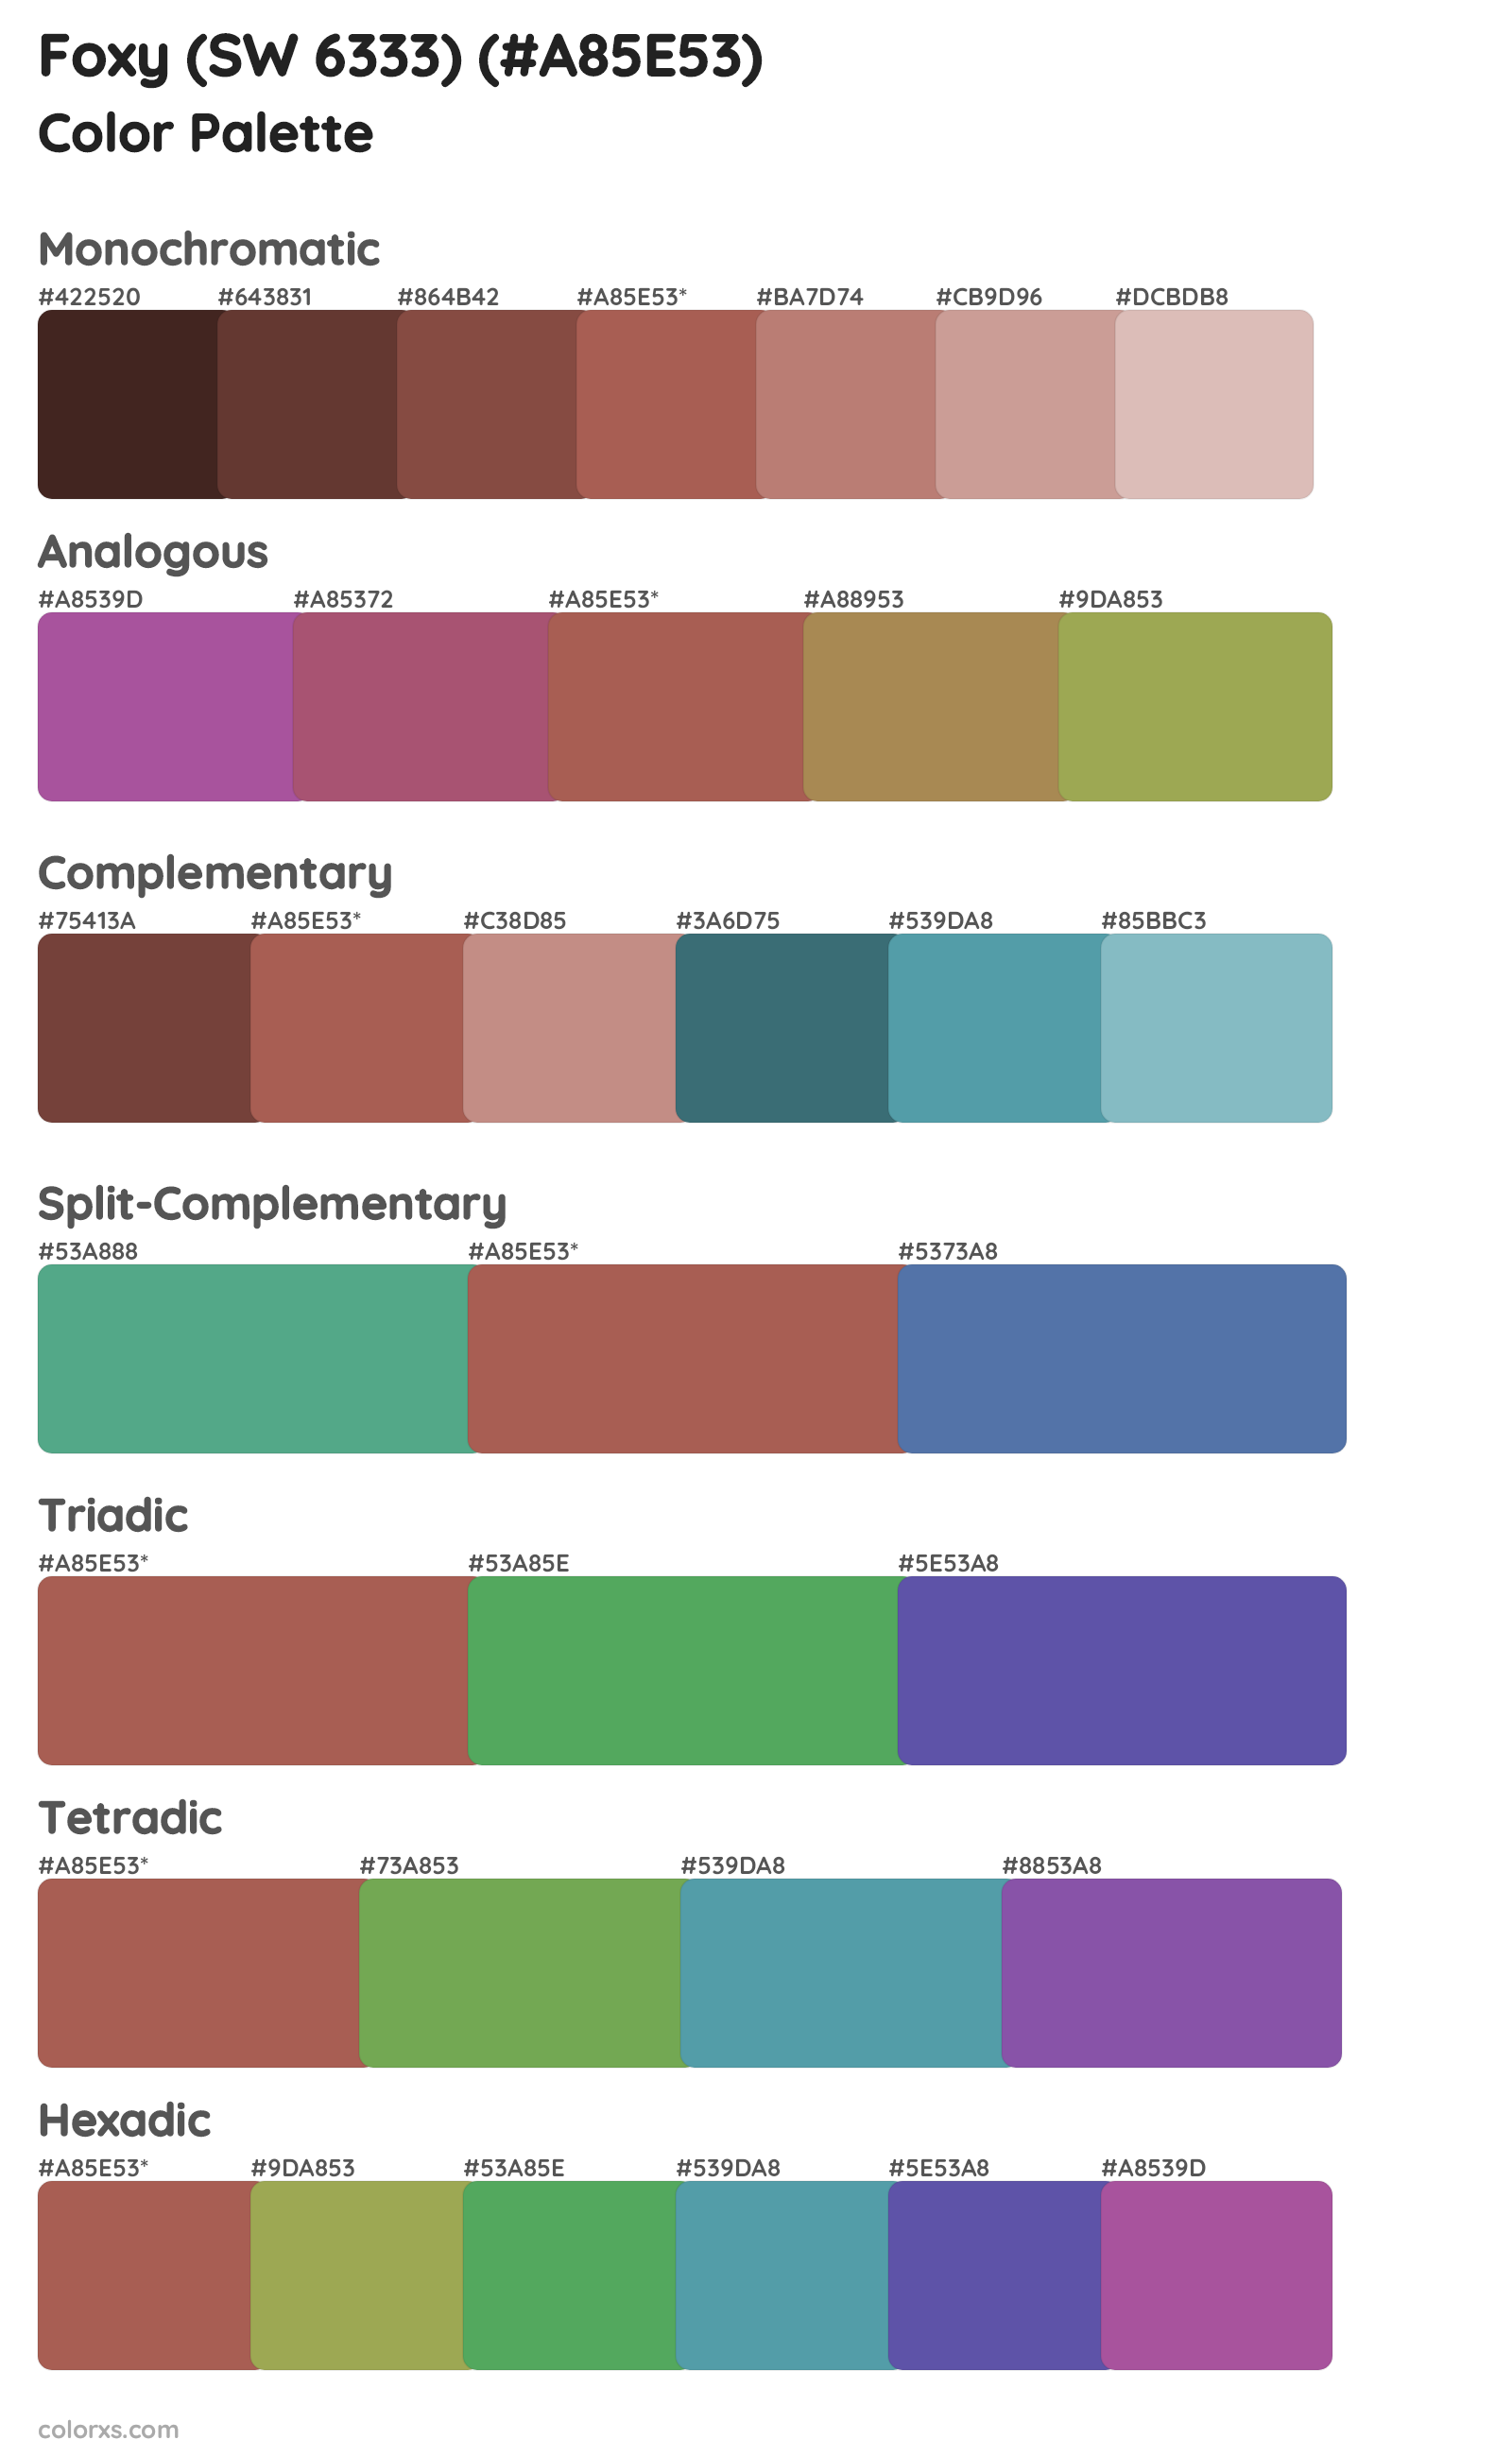 Foxy (SW 6333) Color Scheme Palettes